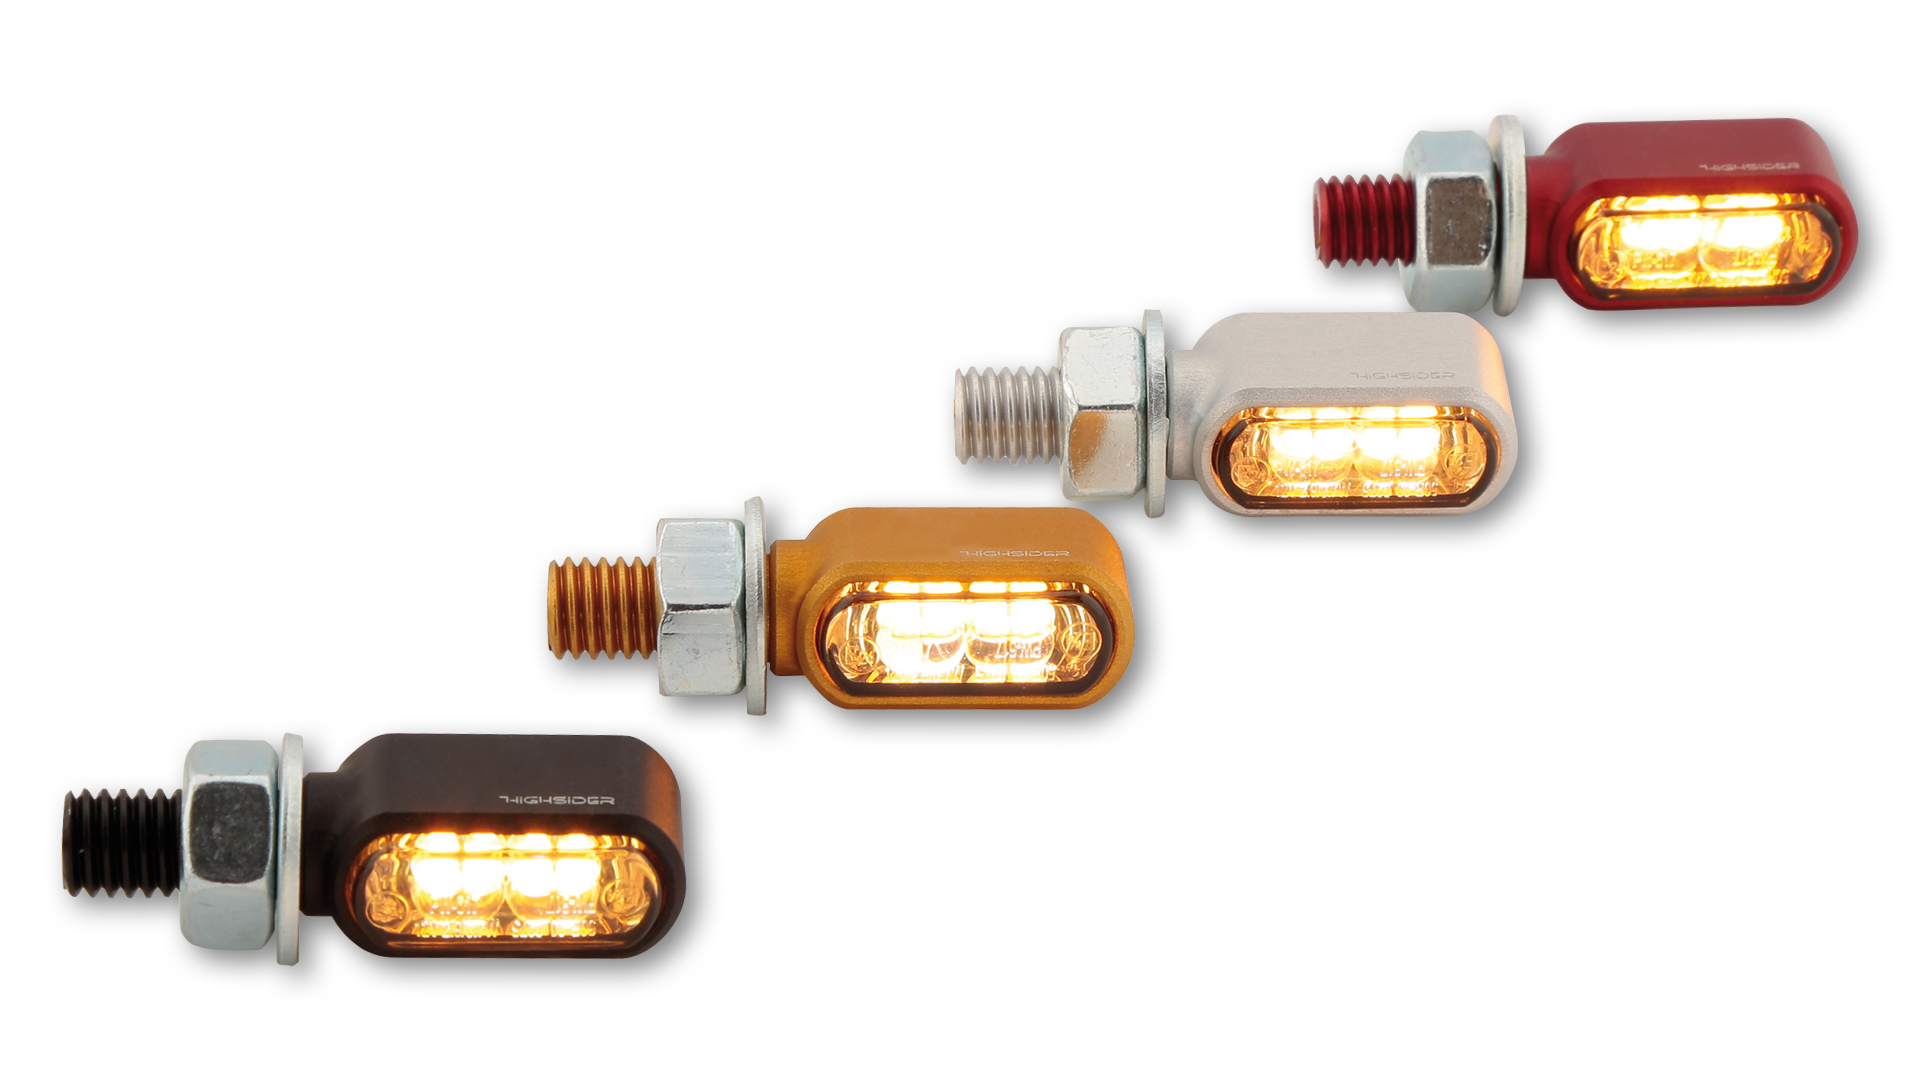 LED Blinker/Positionslicht LITTLE BRONX, getöntes Glas, E-geprüft, Paar, in verschiedenen Farben erhältlich.&ltbr&gt